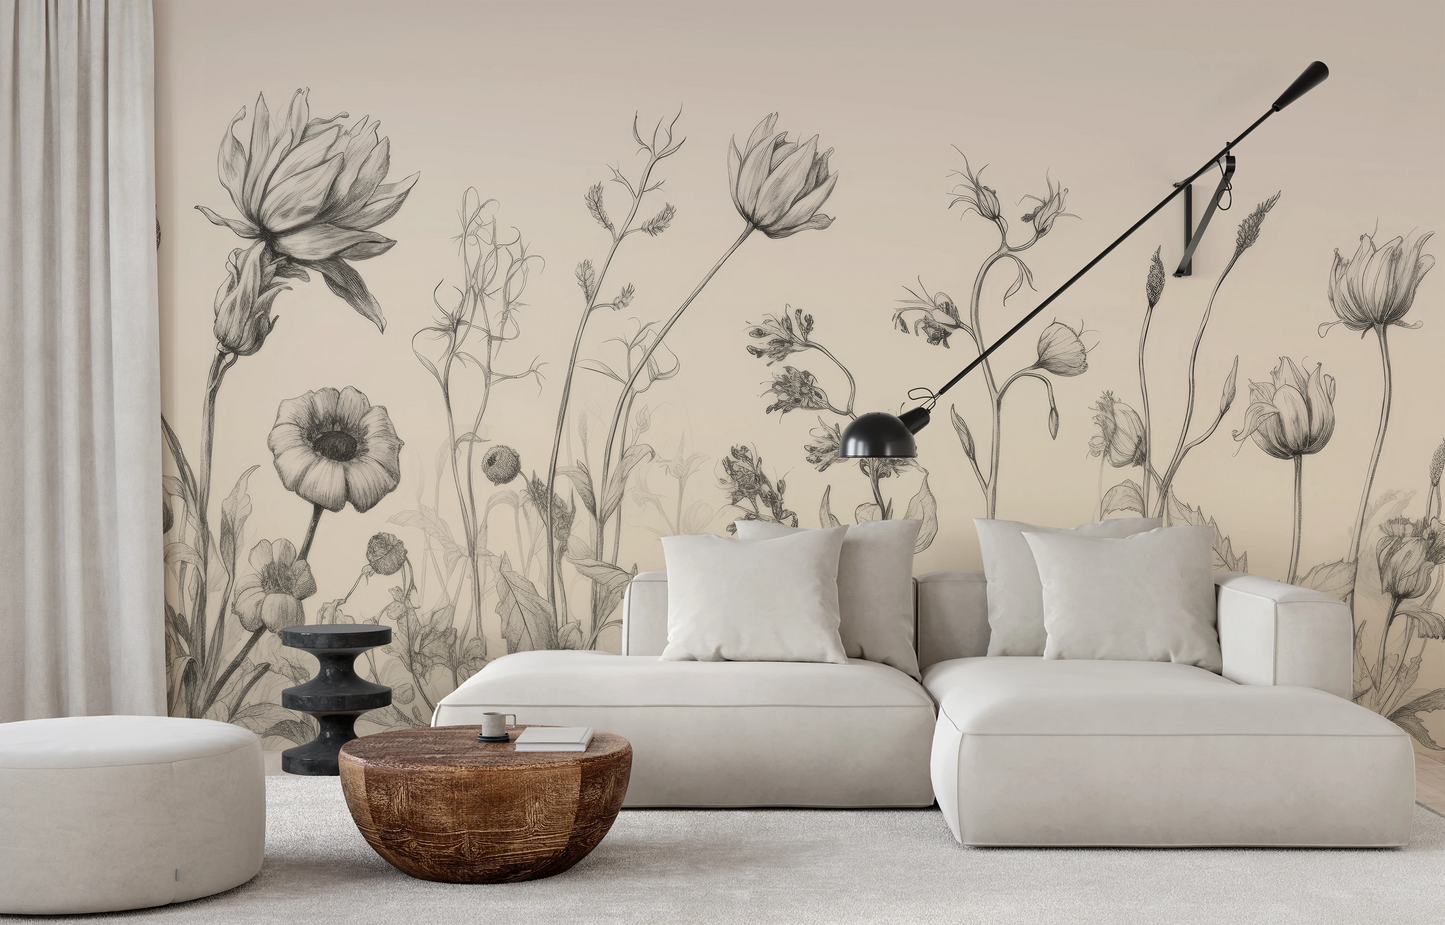 Fototapeta malowana o nazwie Blossom Array pokazana w aranżacji wnętrza.